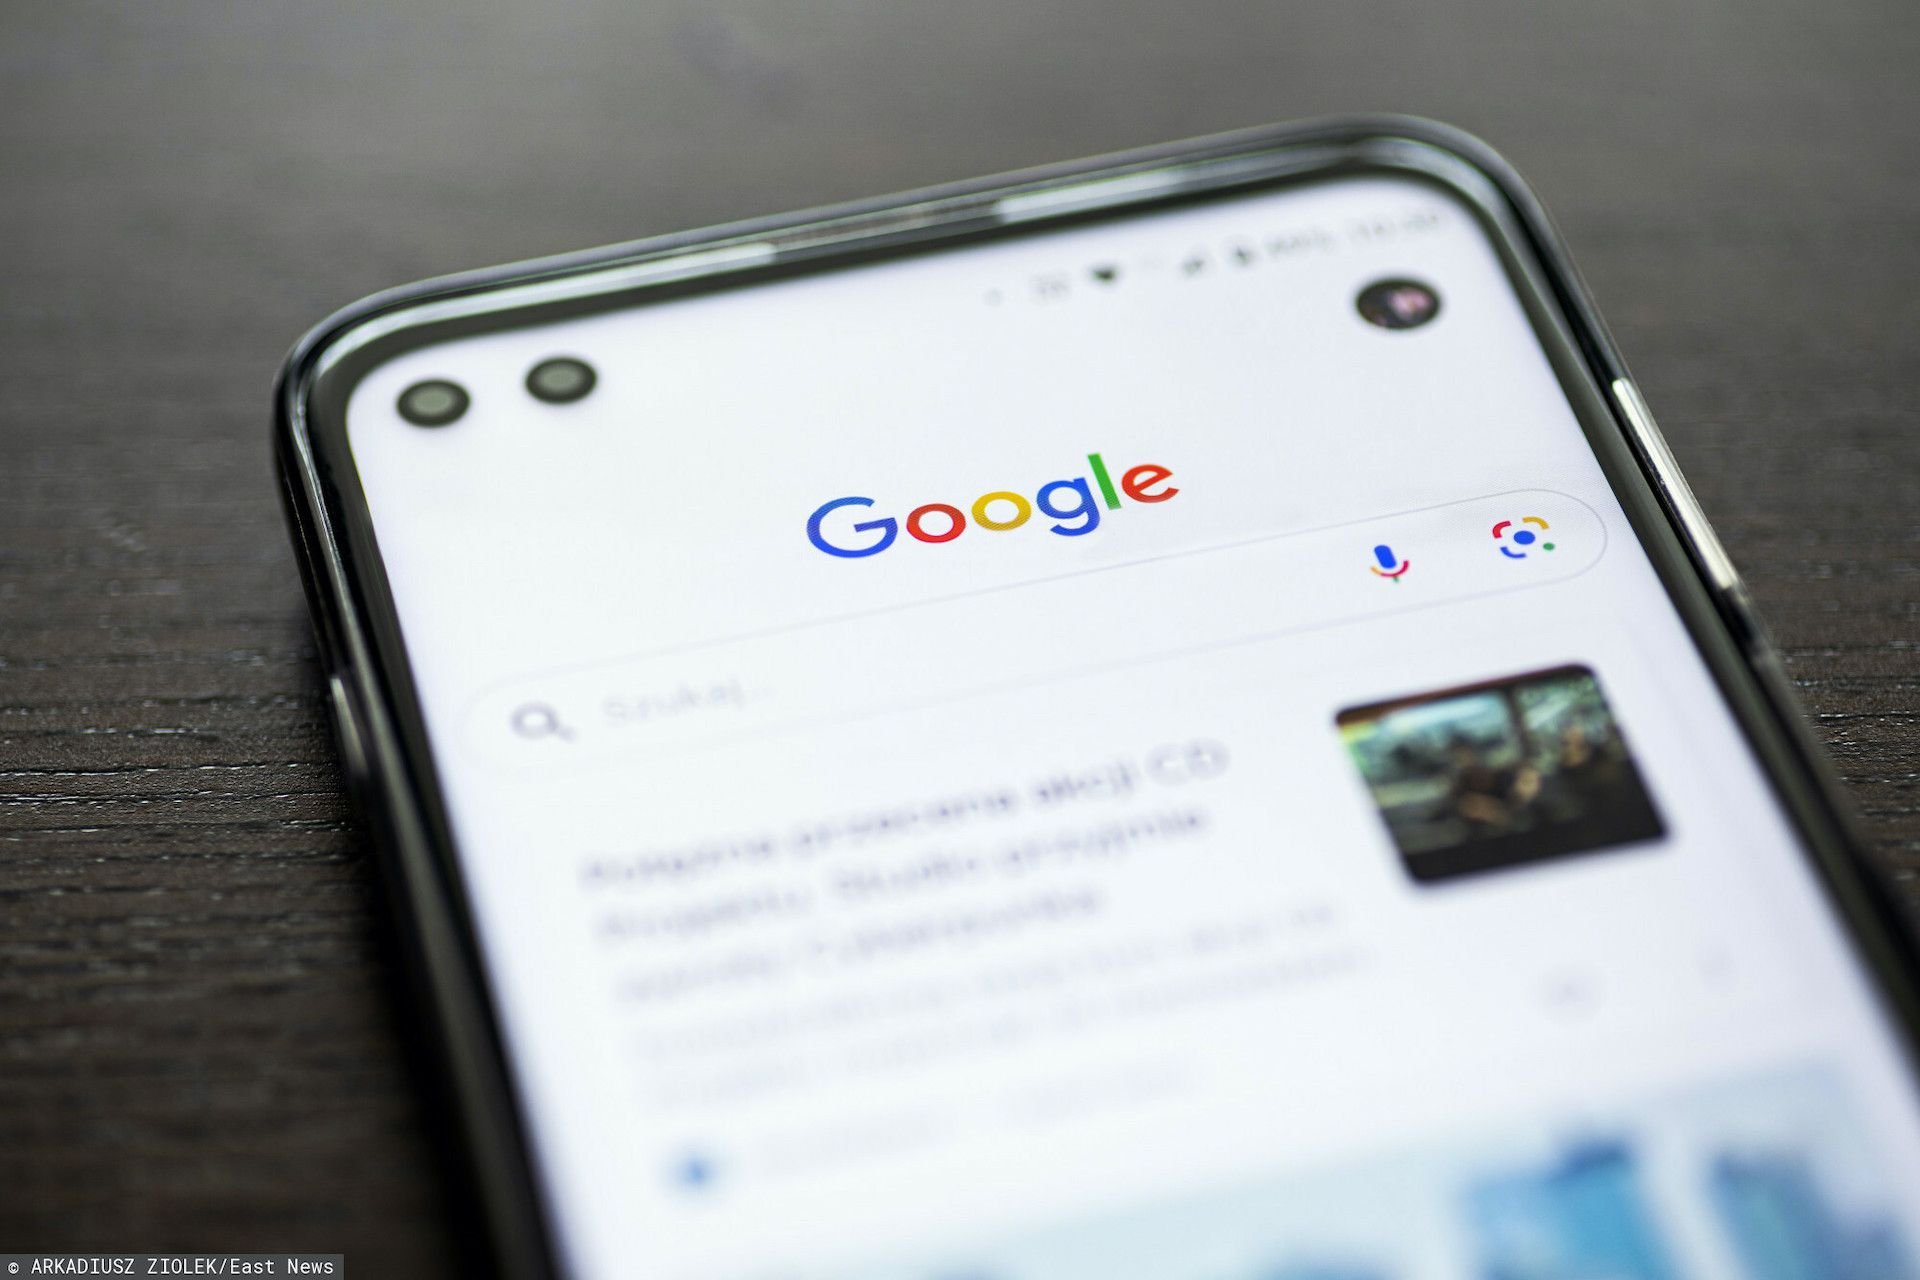 Awaria Google: na smartfonach pojawia się komunikat „Google wciąż przestaje działać”